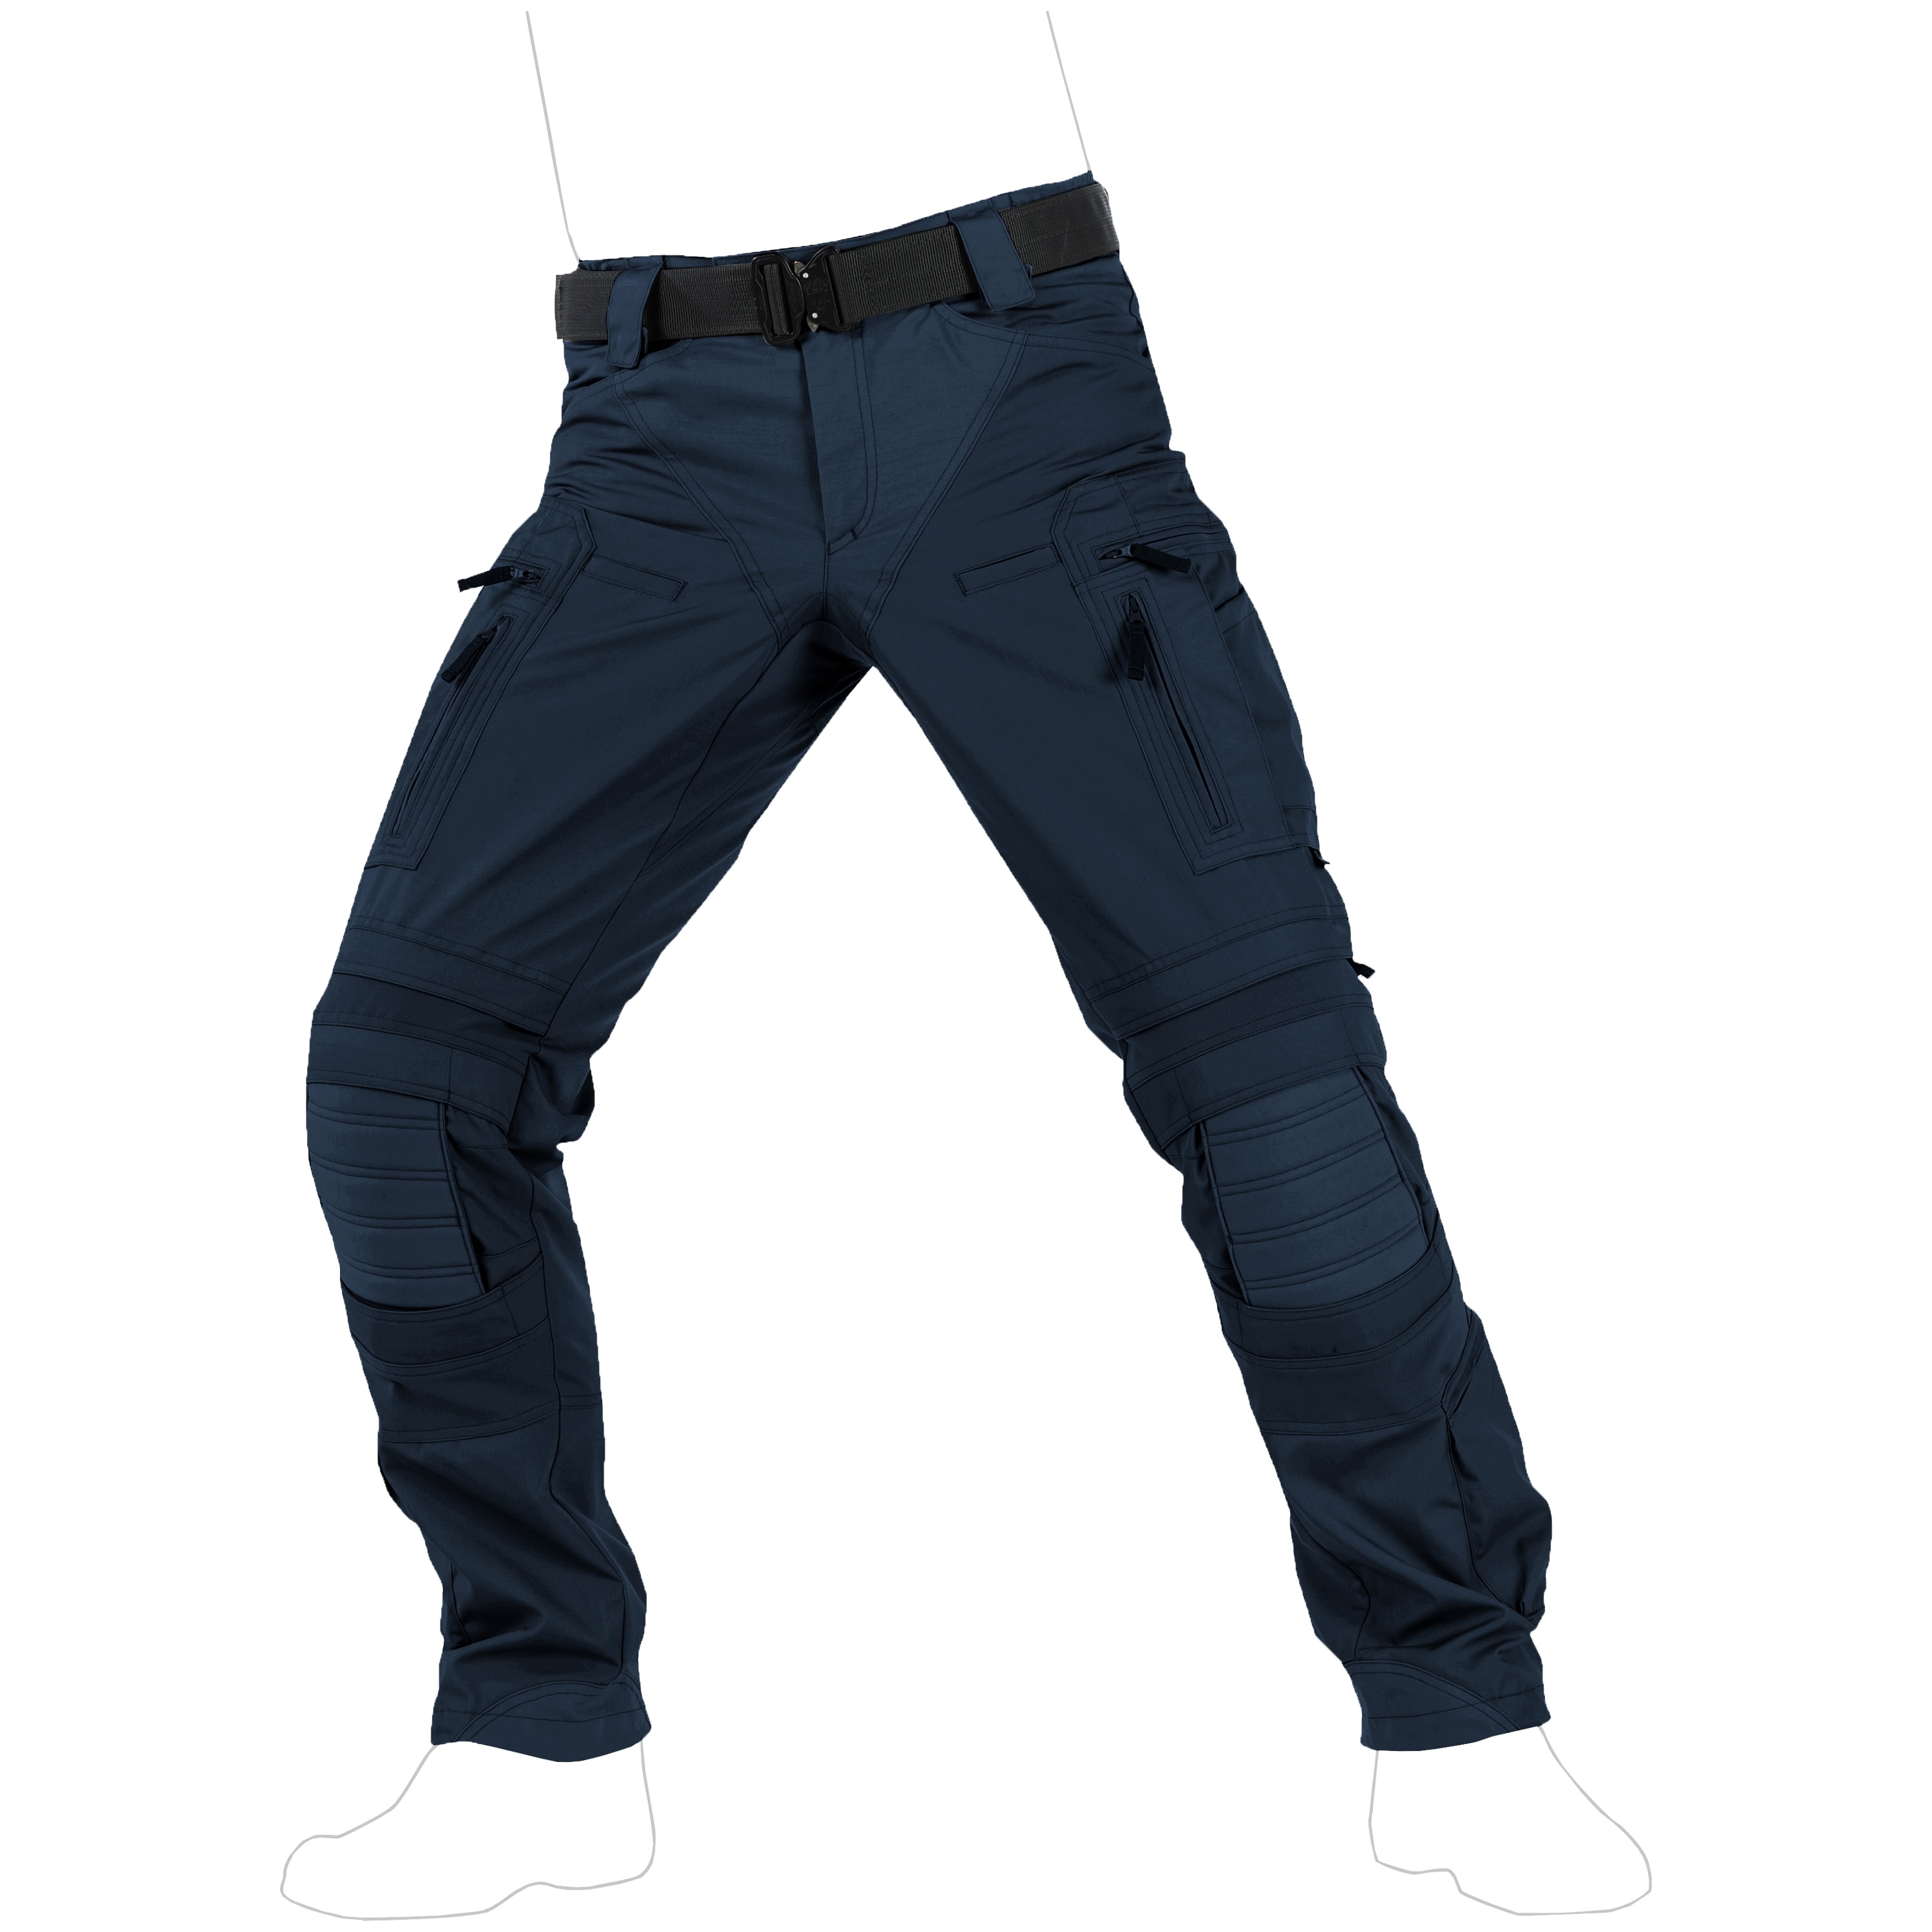 blue combat pants